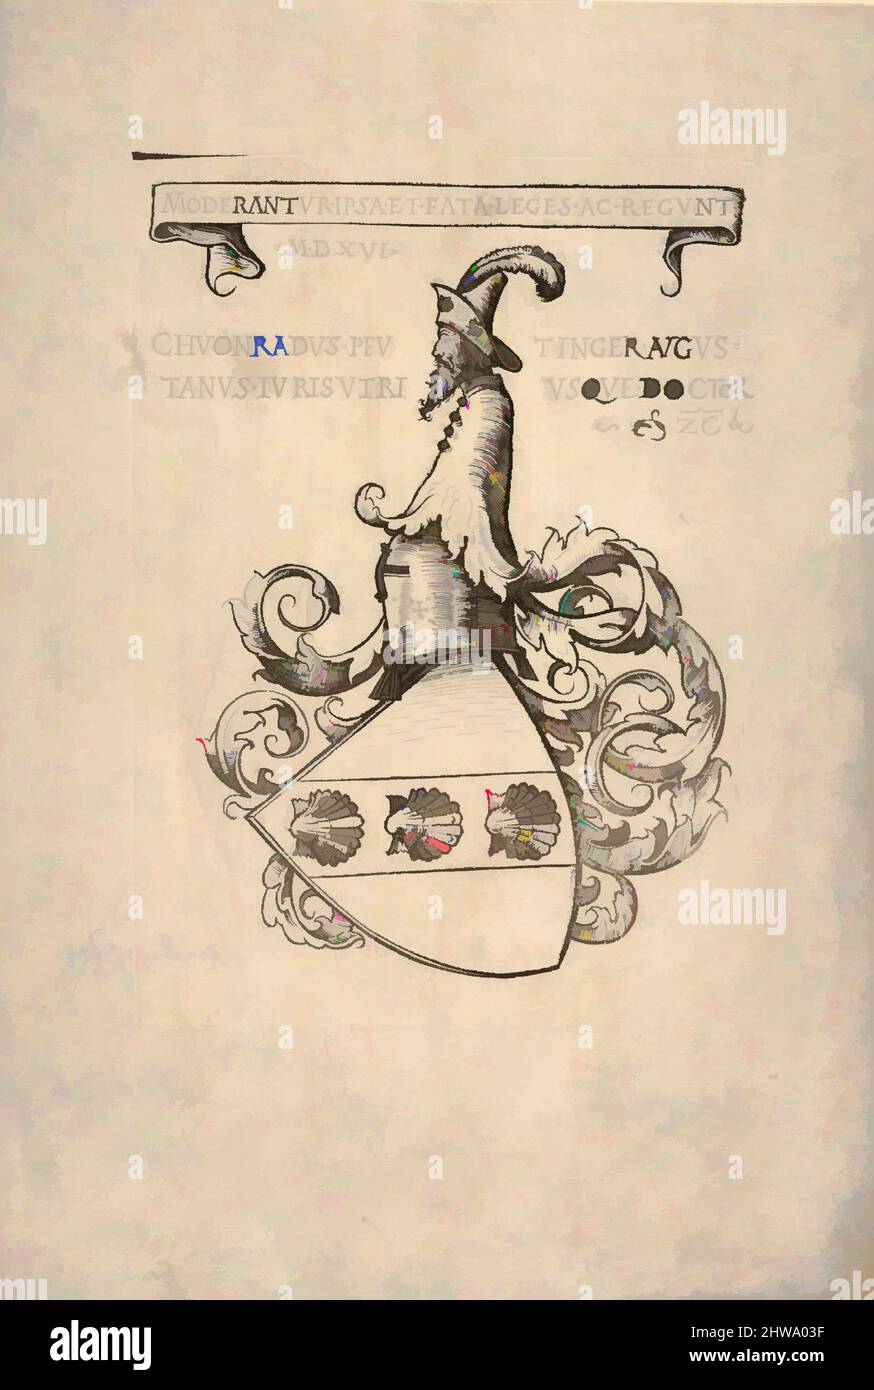 Kunst inspiriert von Bookplate mit dem Wappen von Konrad Peutinger, Hans Burgkmair (deutsch, Augsburg 1473–1531 Augsburg), 1516, Klassische Werke, die von Artotop mit einem Schuss Moderne modernisiert wurden. Formen, Farbe und Wert, auffällige visuelle Wirkung auf Kunst. Emotionen durch Freiheit von Kunstwerken auf zeitgemäße Weise. Eine zeitlose Botschaft, die eine wild kreative neue Richtung verfolgt. Künstler, die sich dem digitalen Medium zuwenden und die Artotop NFT erschaffen Stockfoto